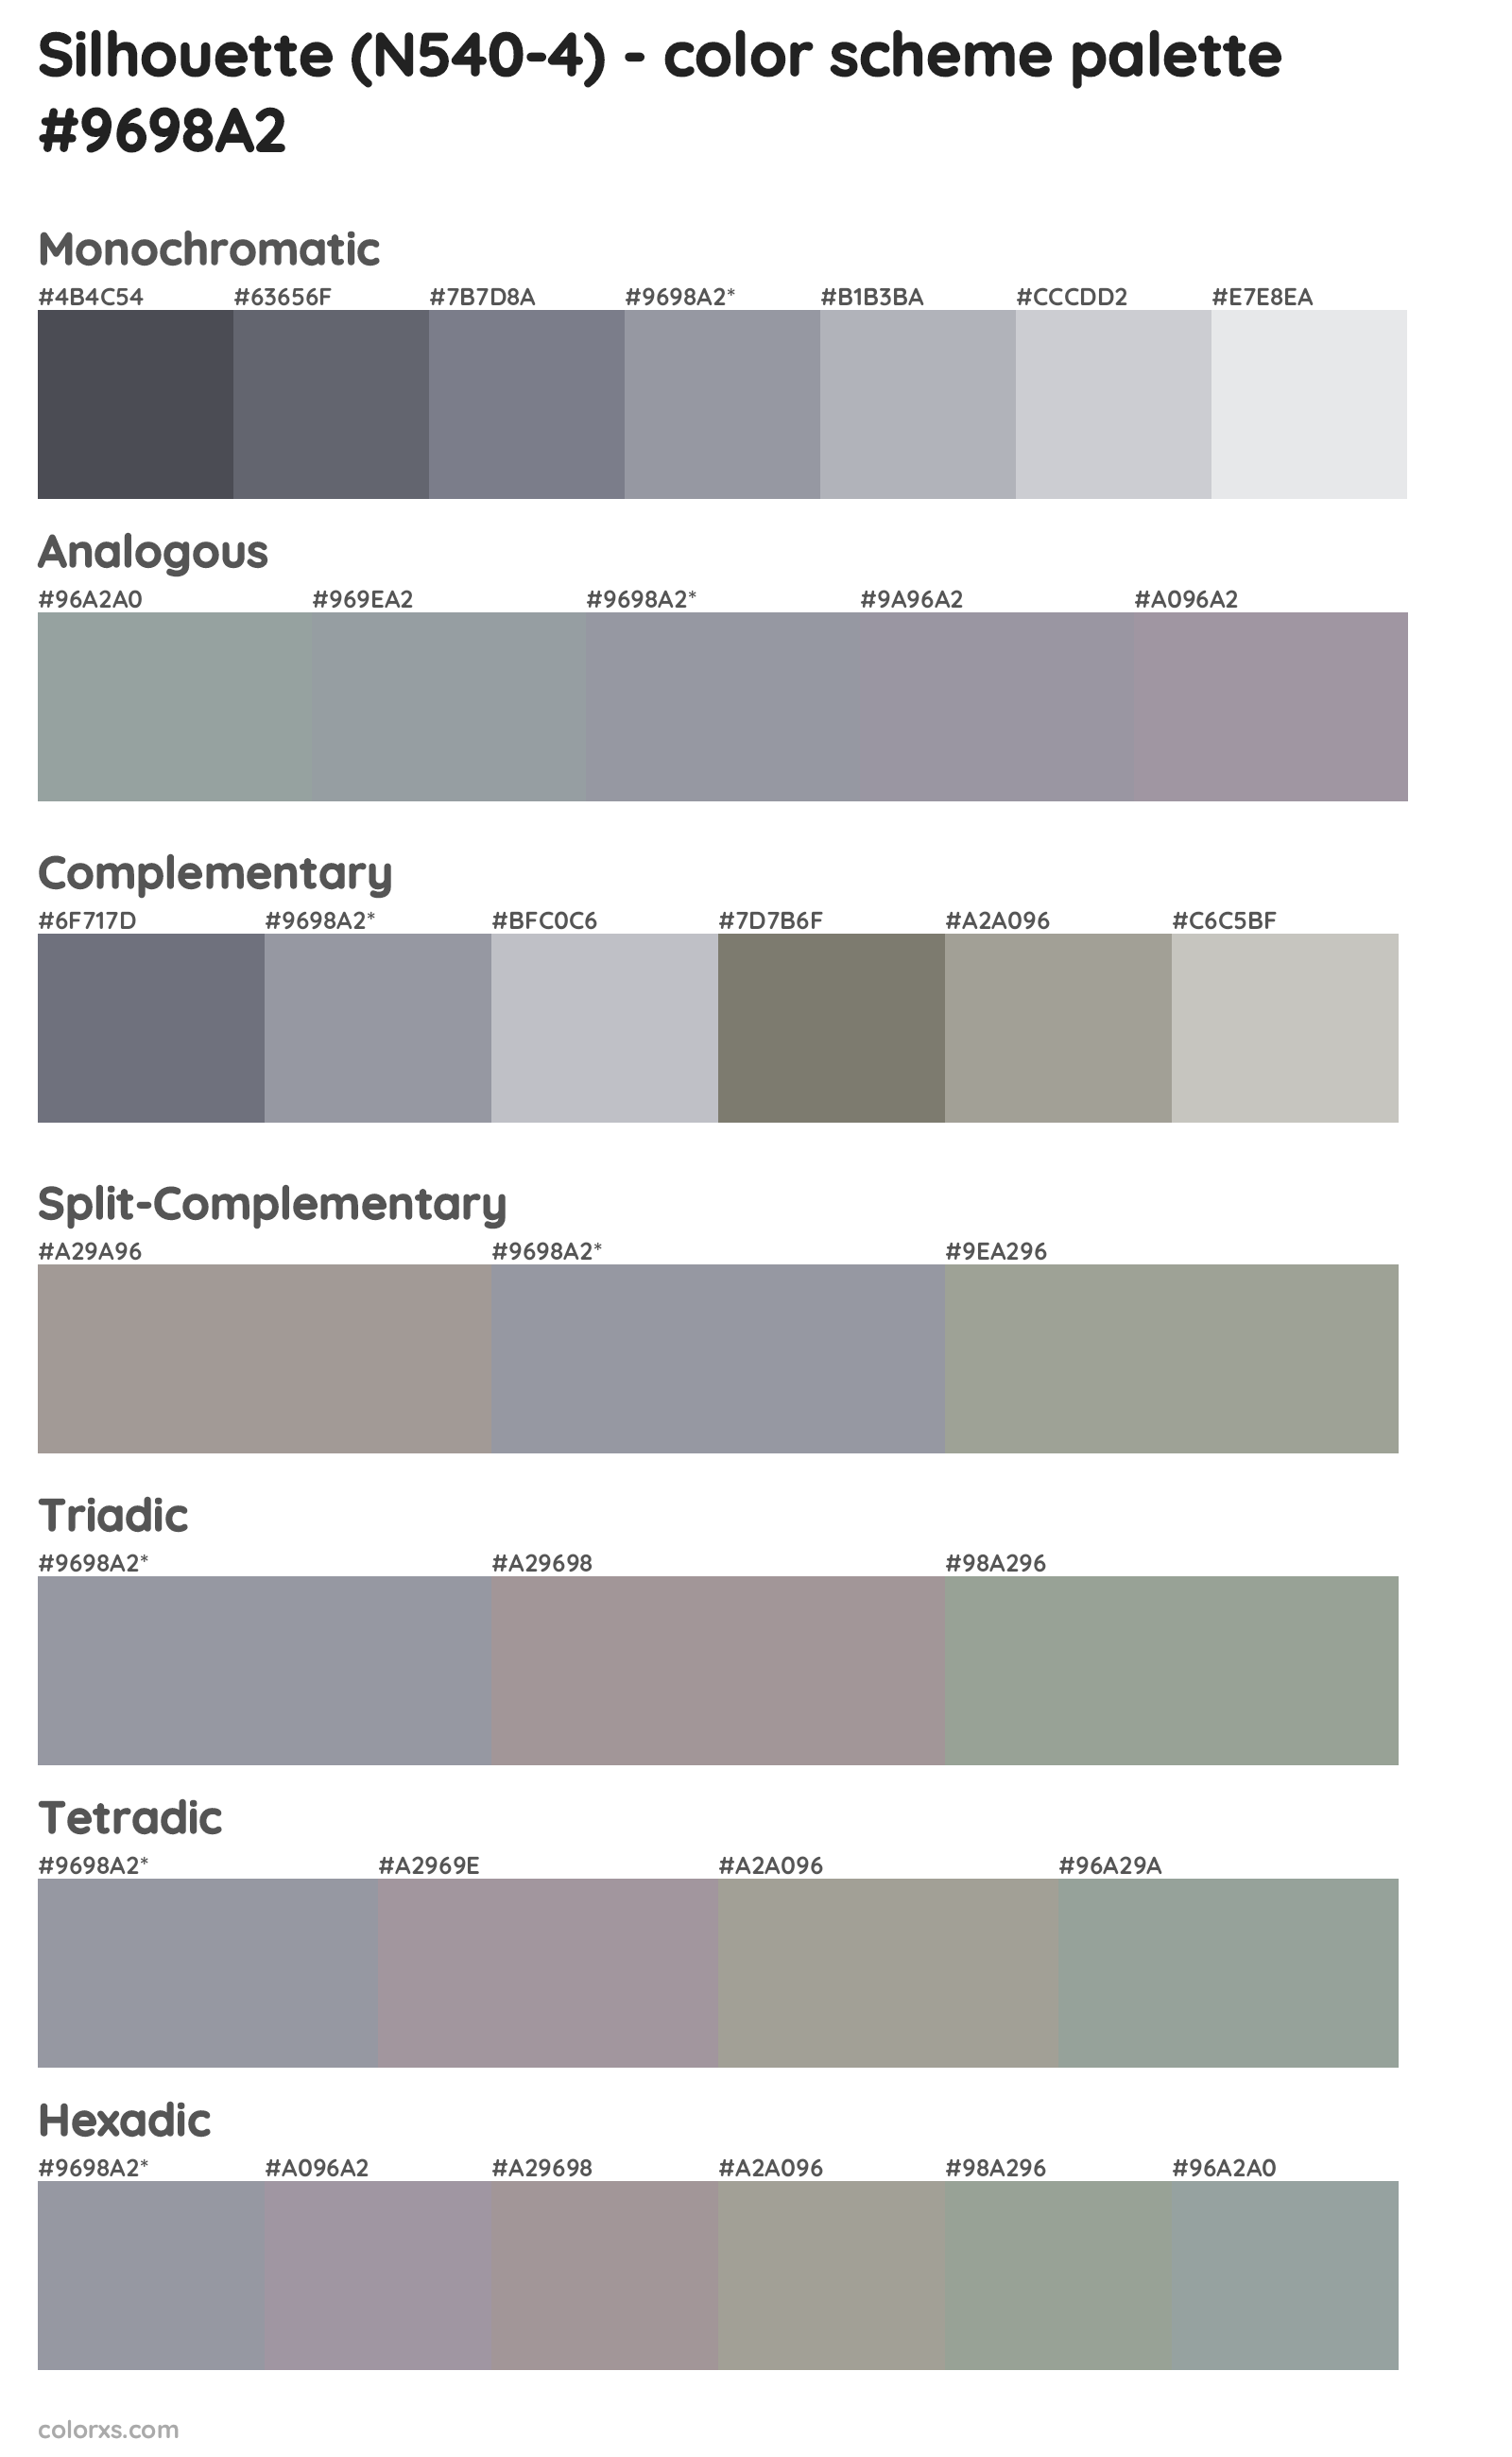 Silhouette (N540-4) Color Scheme Palettes